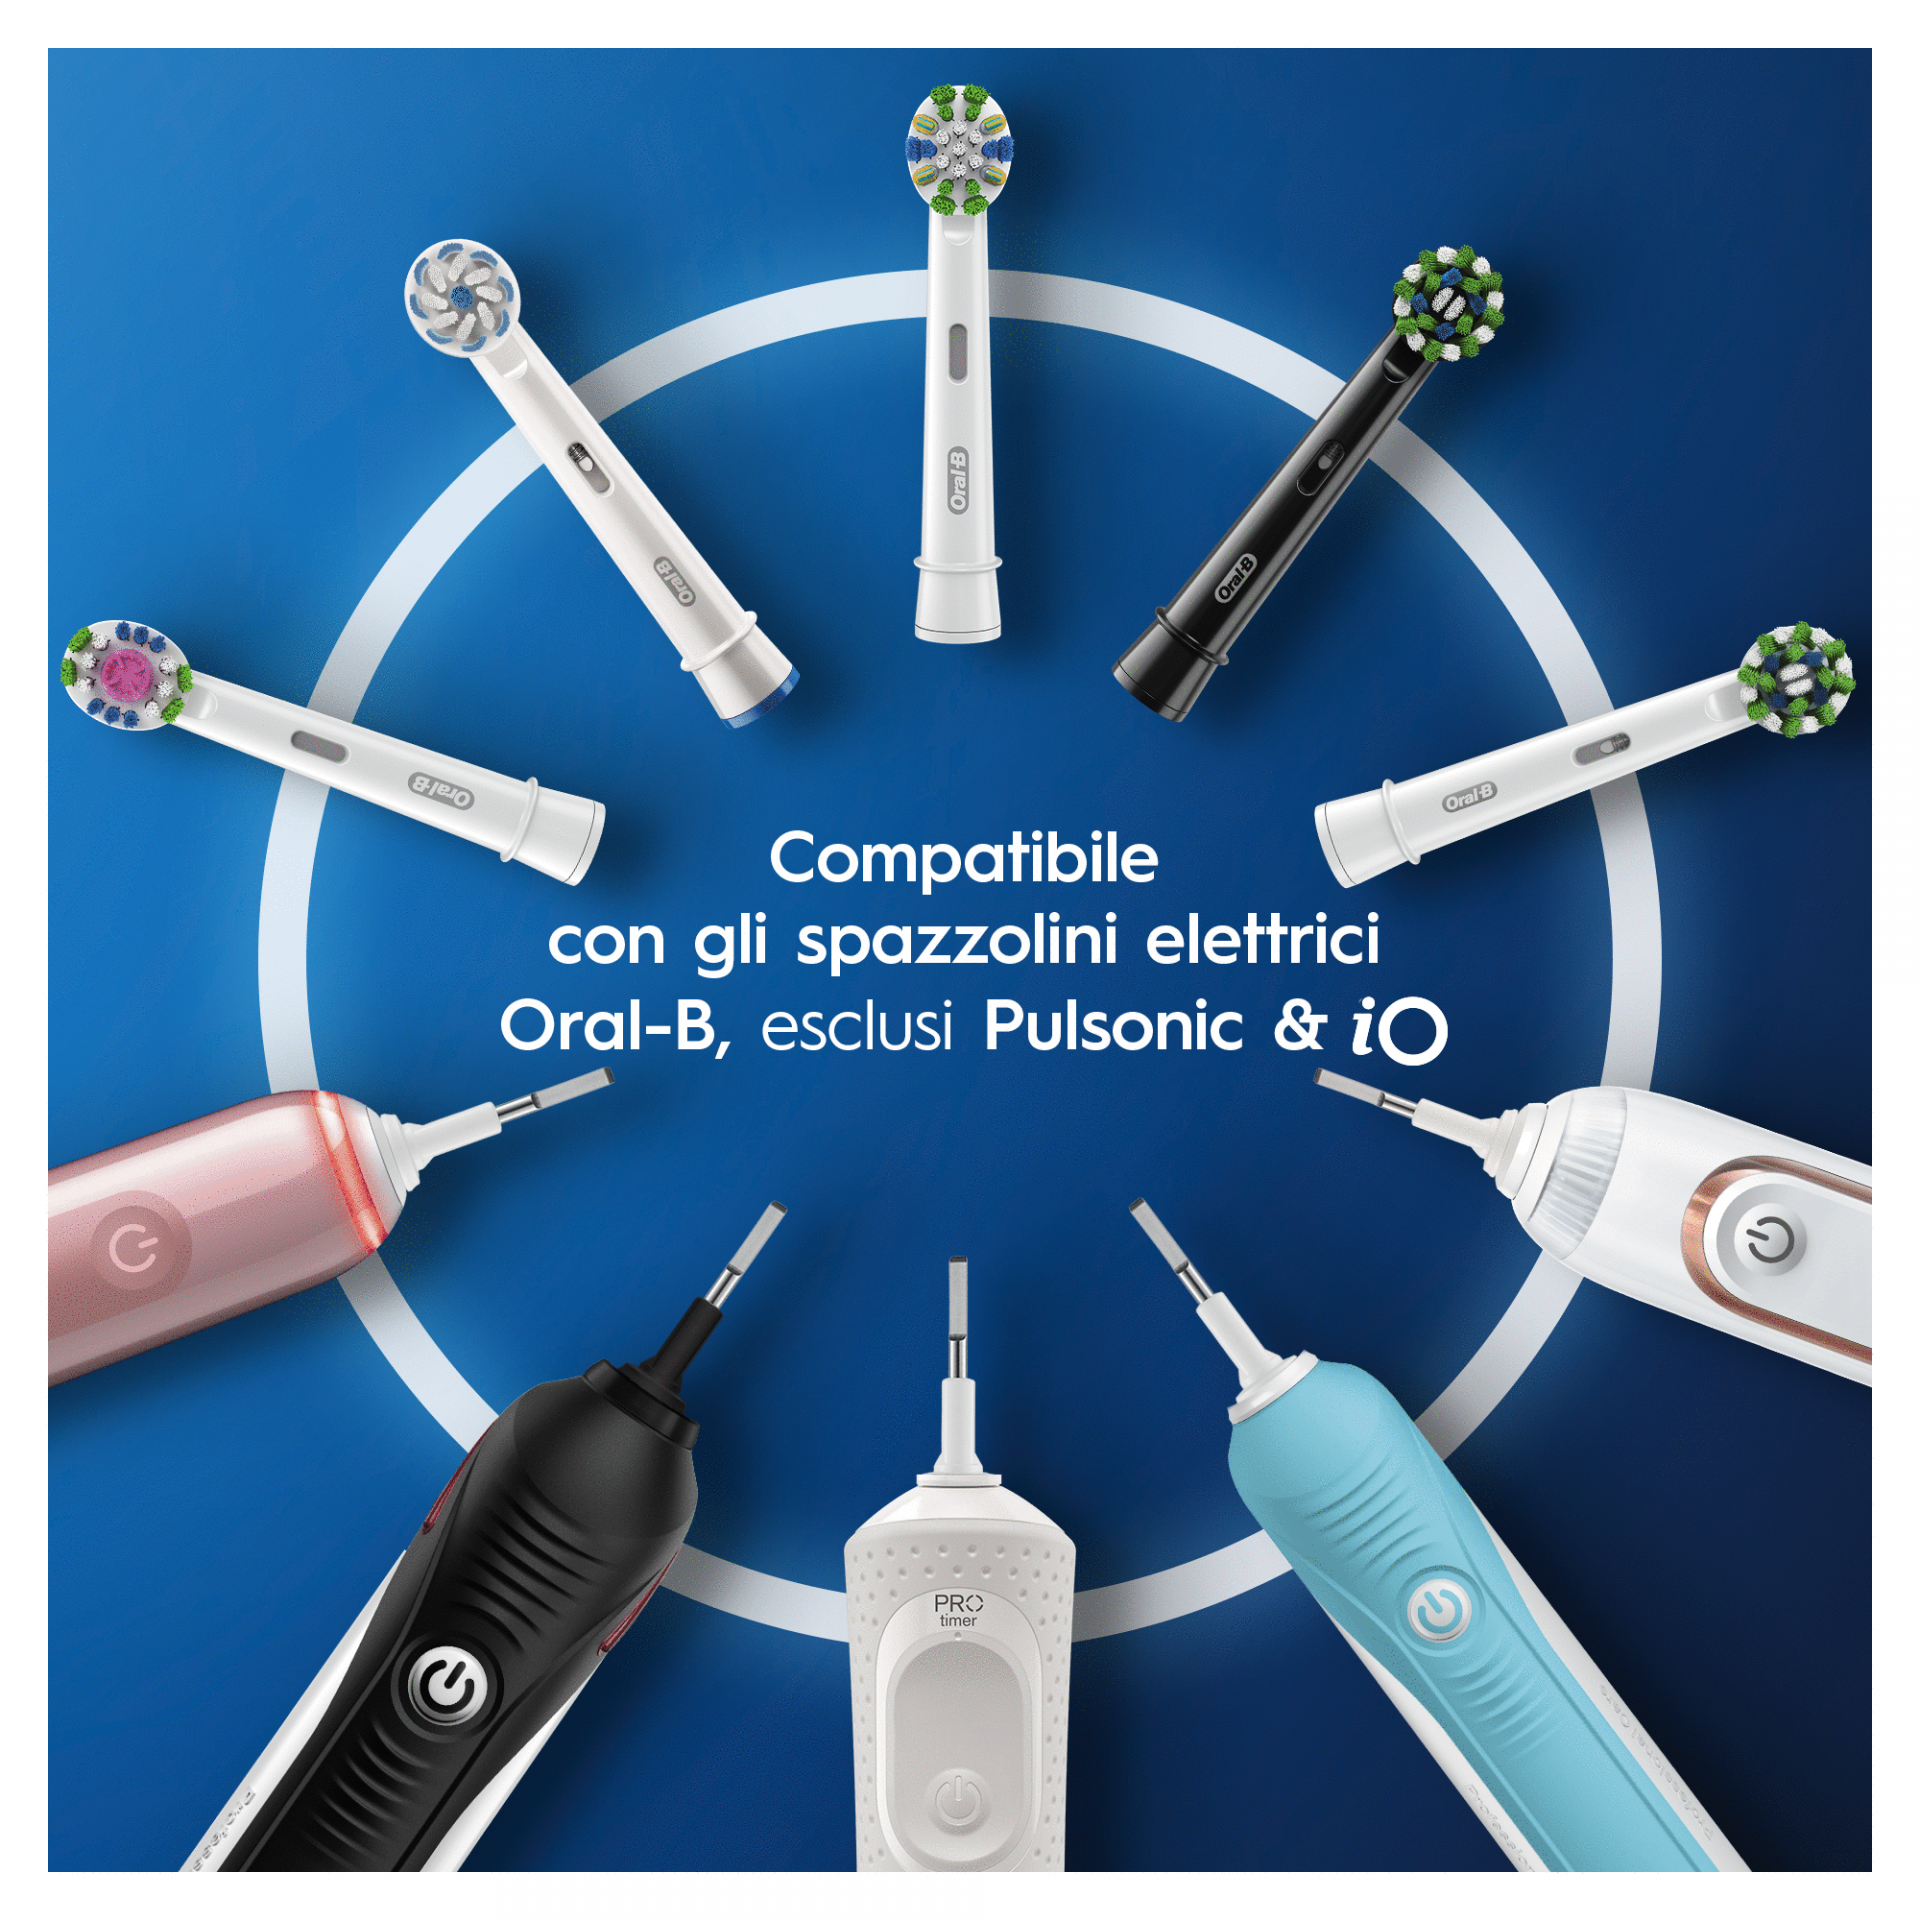 Oral-B Spazzolino Elettrico Ricaricabile Smart 4 4500 - Sorrisodeciso: il  filo diretto col tuo dentista